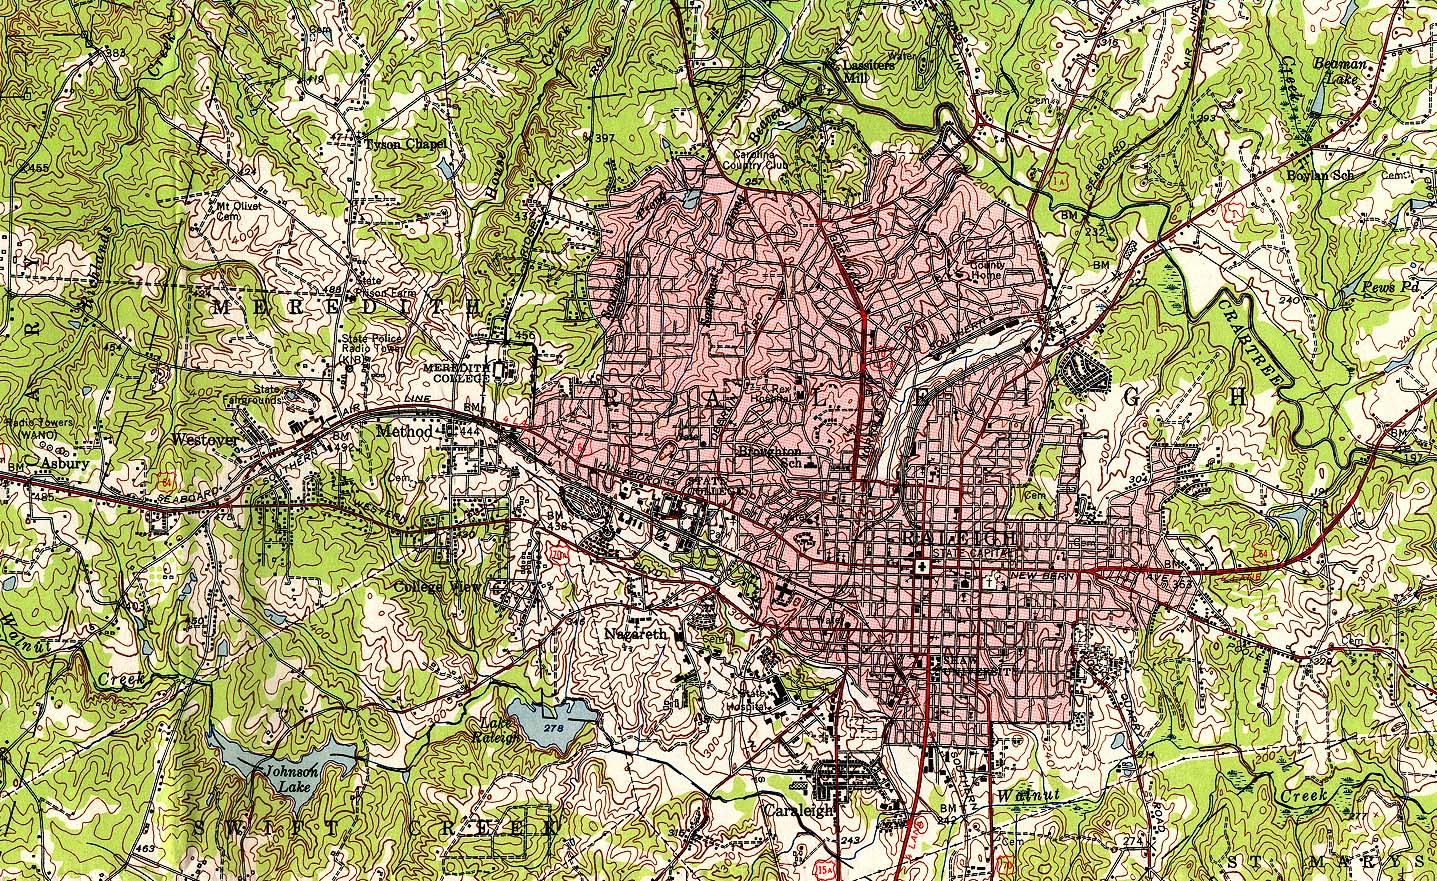 Mapa Topográfico de la Ciudad de Raleigh, Carolina del Norte, Estados Unidos 1951